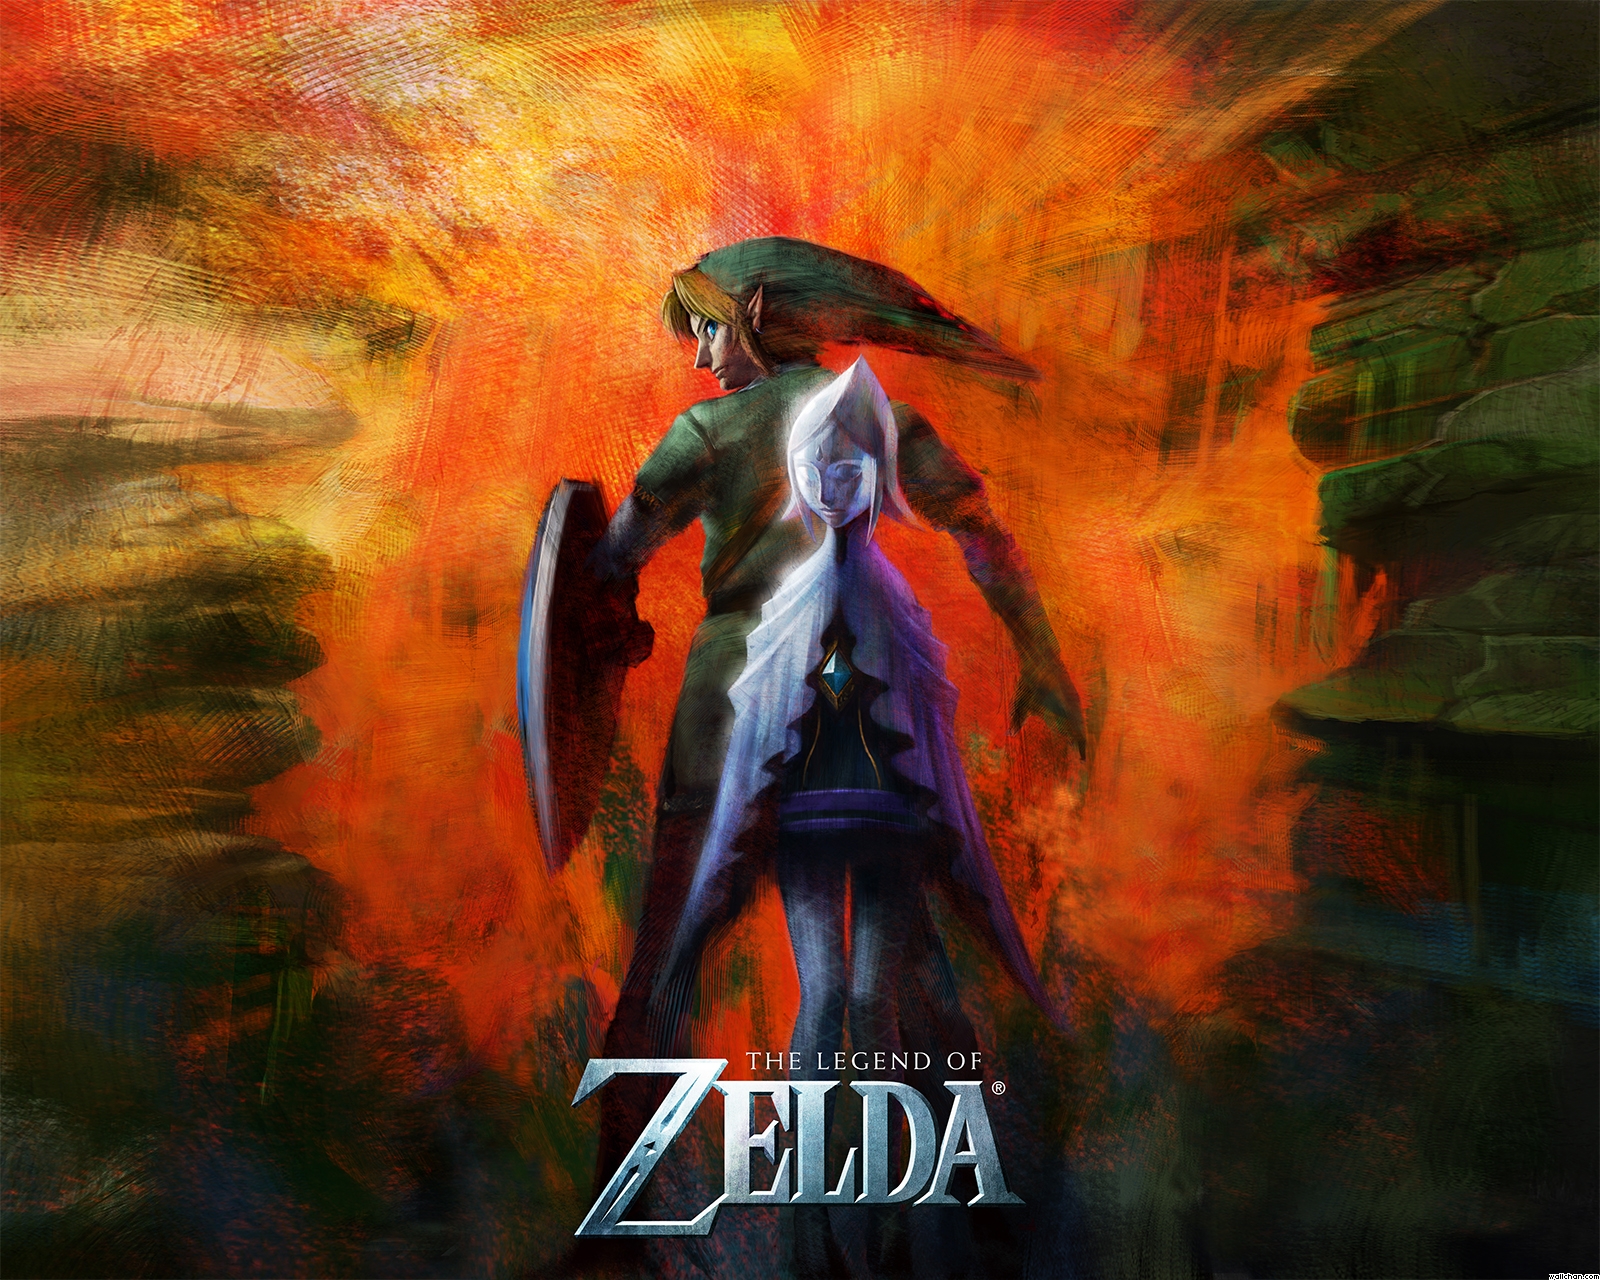 Pour les 25 ans de la série mythique The Legend of Zelda, Nintendo offre à tous ses fans un nouvel épisode, intitulé Skyward Sword sur Wii. Avec une jolie édition...